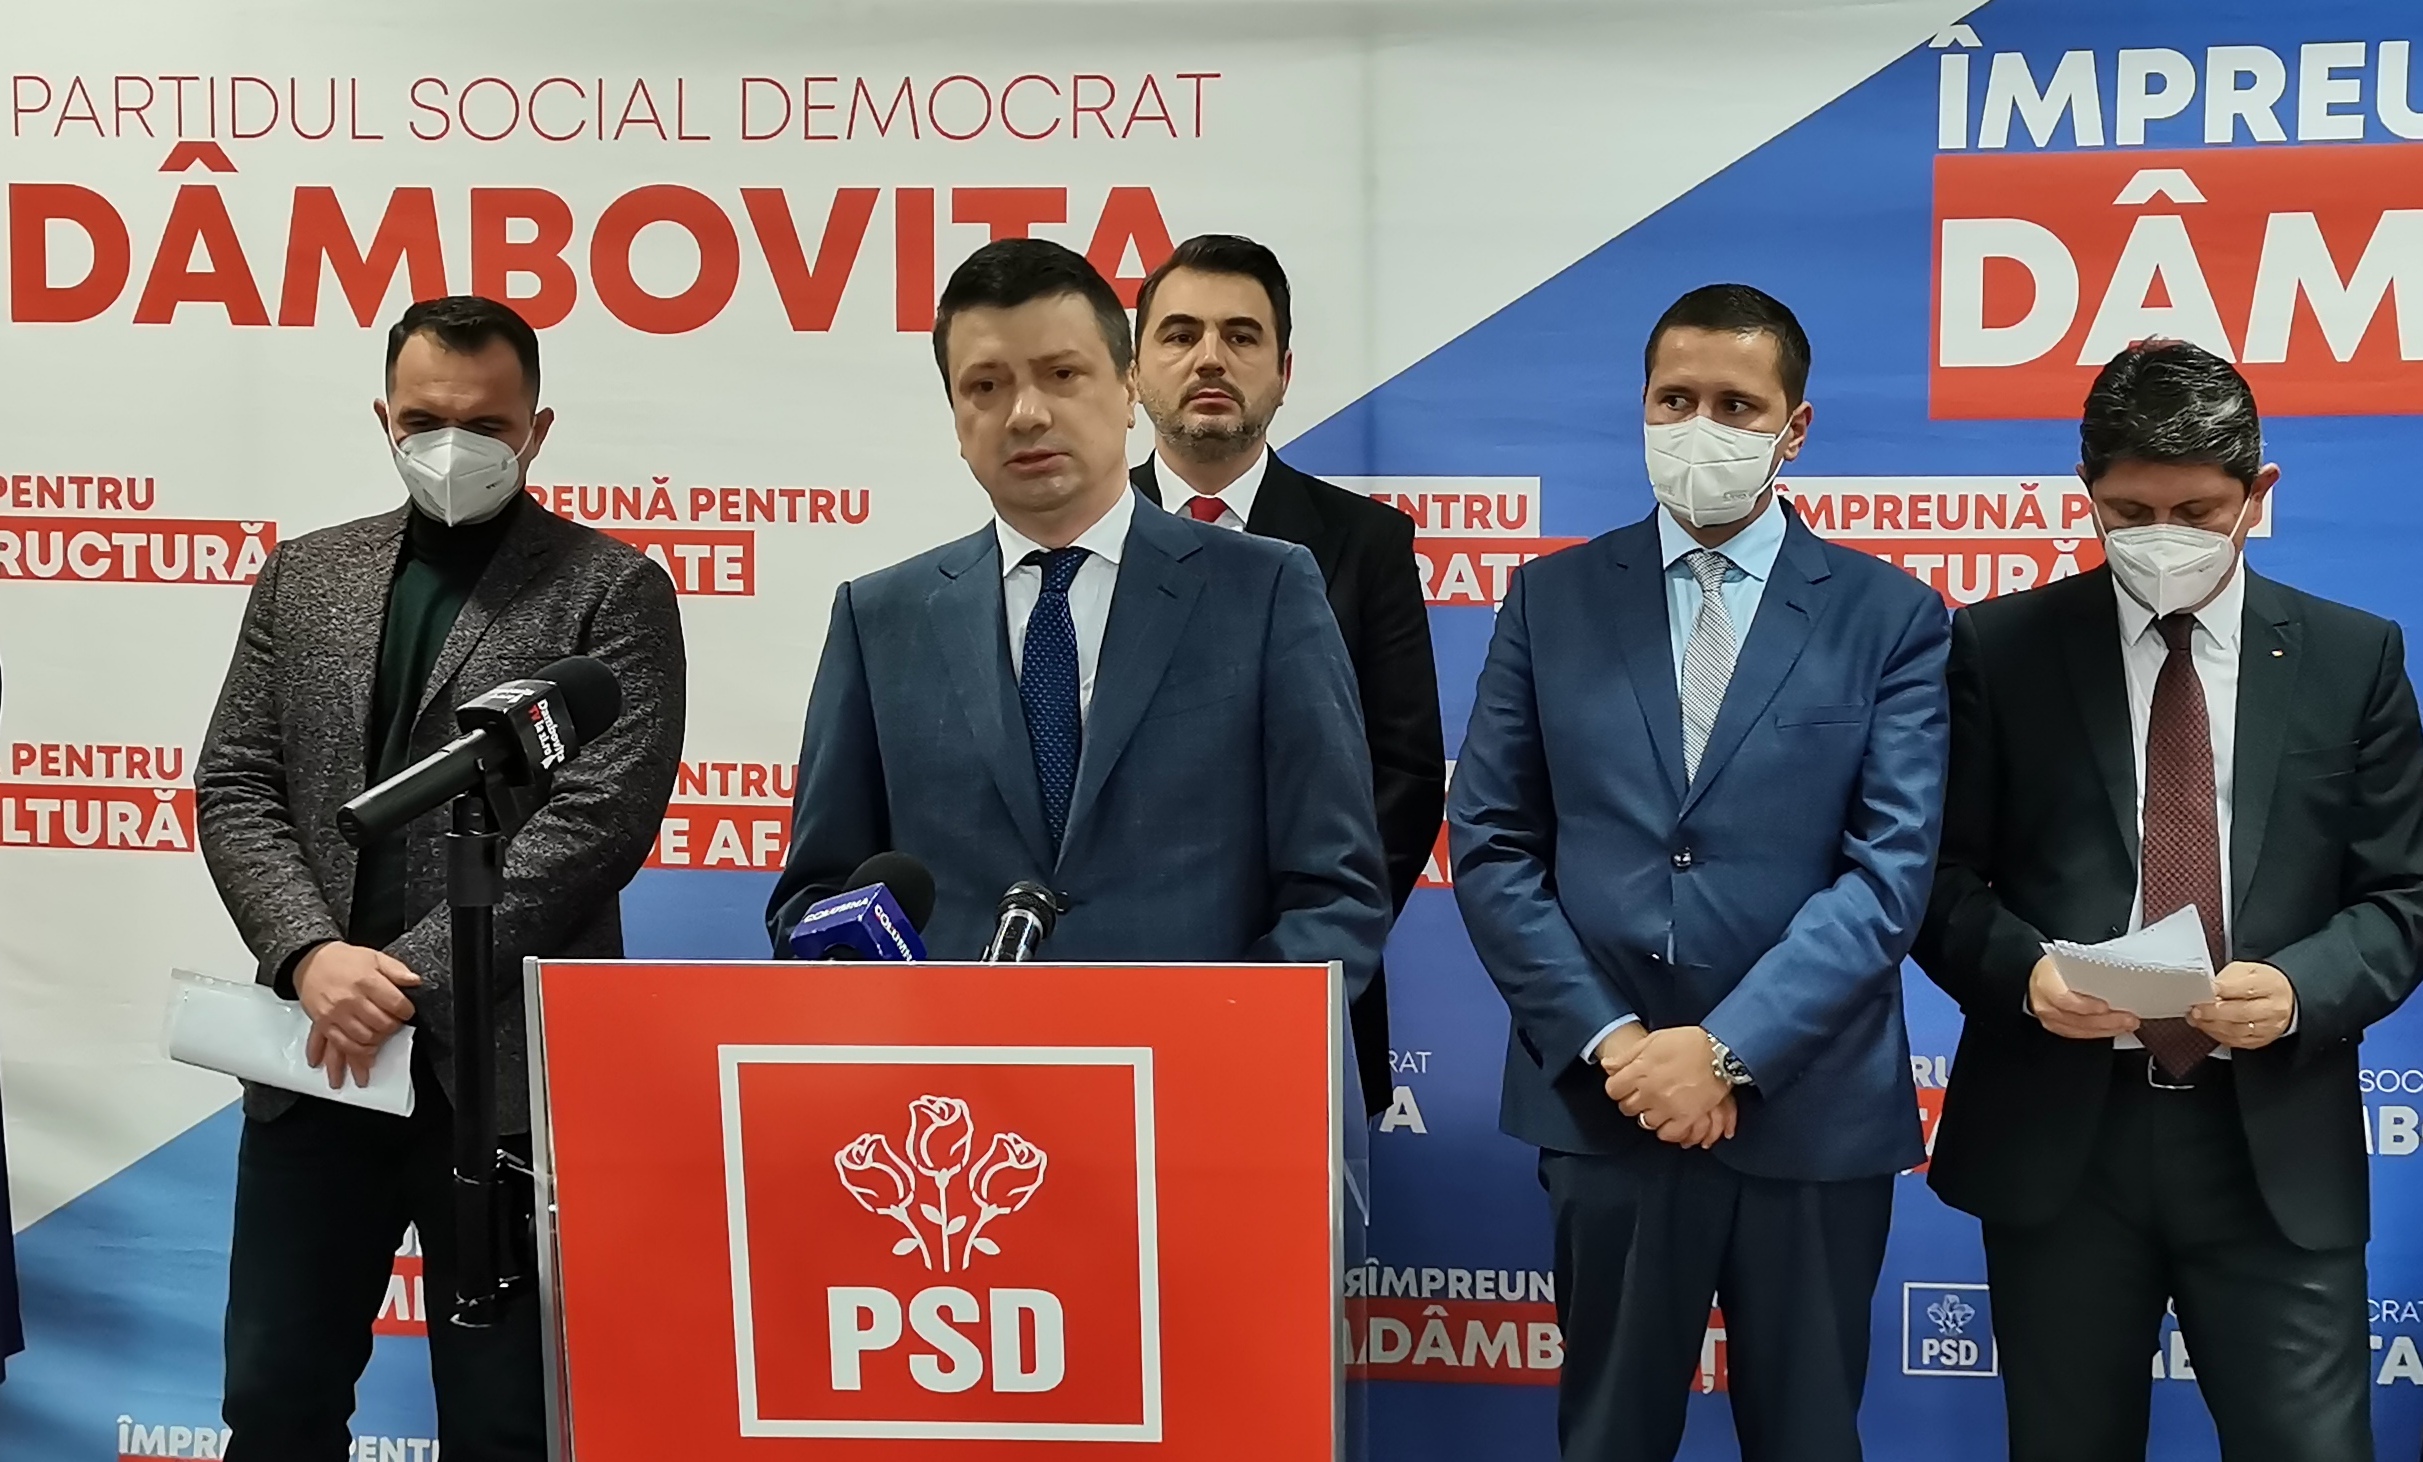 Ioan Vulpescu, candidatul PSD Dâmbovița pentru Camera Deputaților: „De mai bine de un an auzim un lung şir de promisiuni liberale în spatele cărora se află doar haosul administrativ, incompetenţă, aroganţă şi dispreţ faţă de cetăţean”